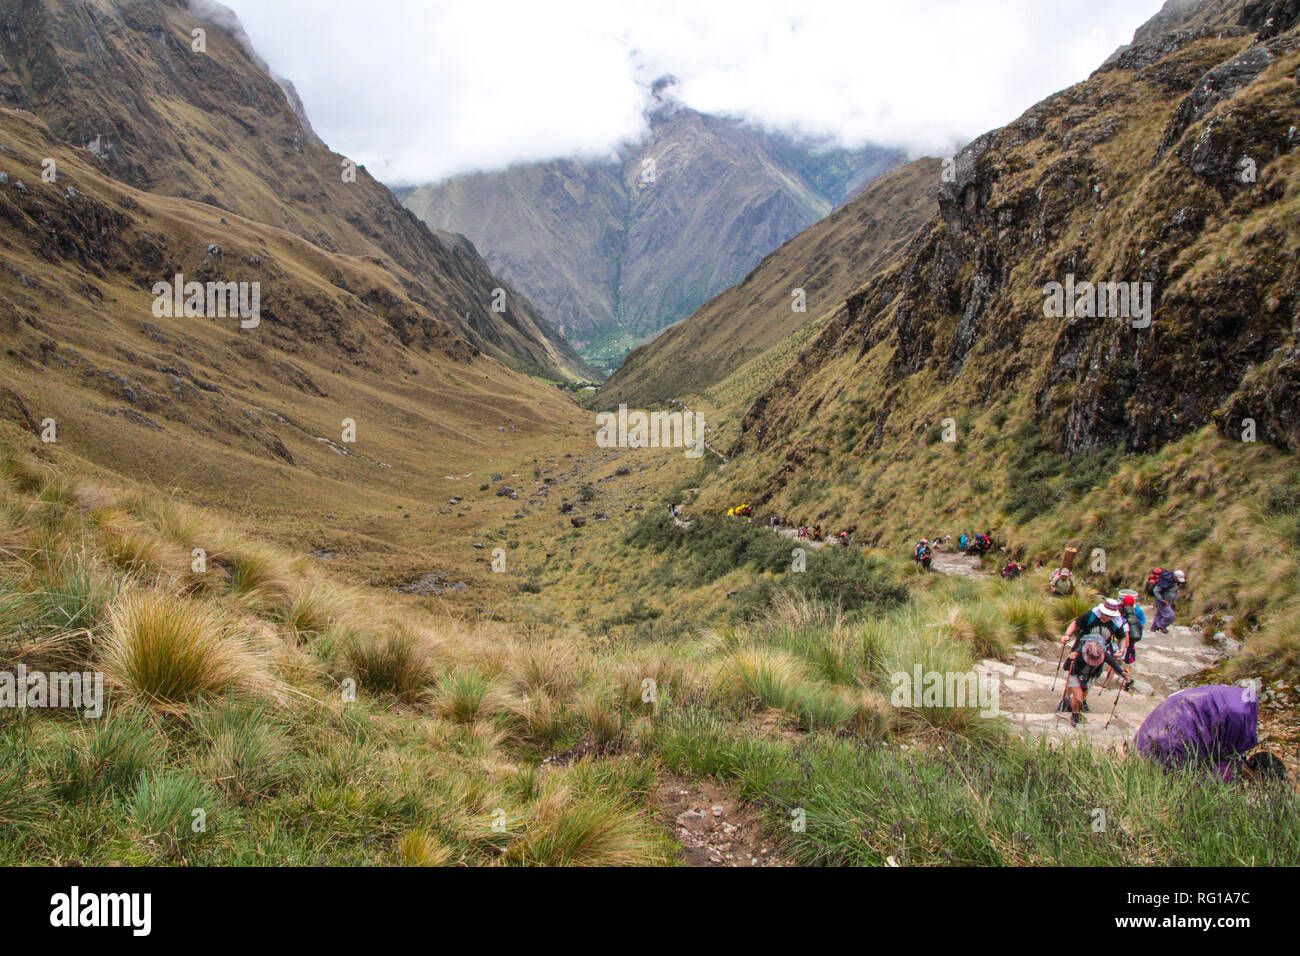 Vue imprenable sur le paysage andin a la suite du célèbre sentier de randonnée Sentier des Incas au Pérou, à travers un paysage de forêt de nuages mystérieux Banque D'Images